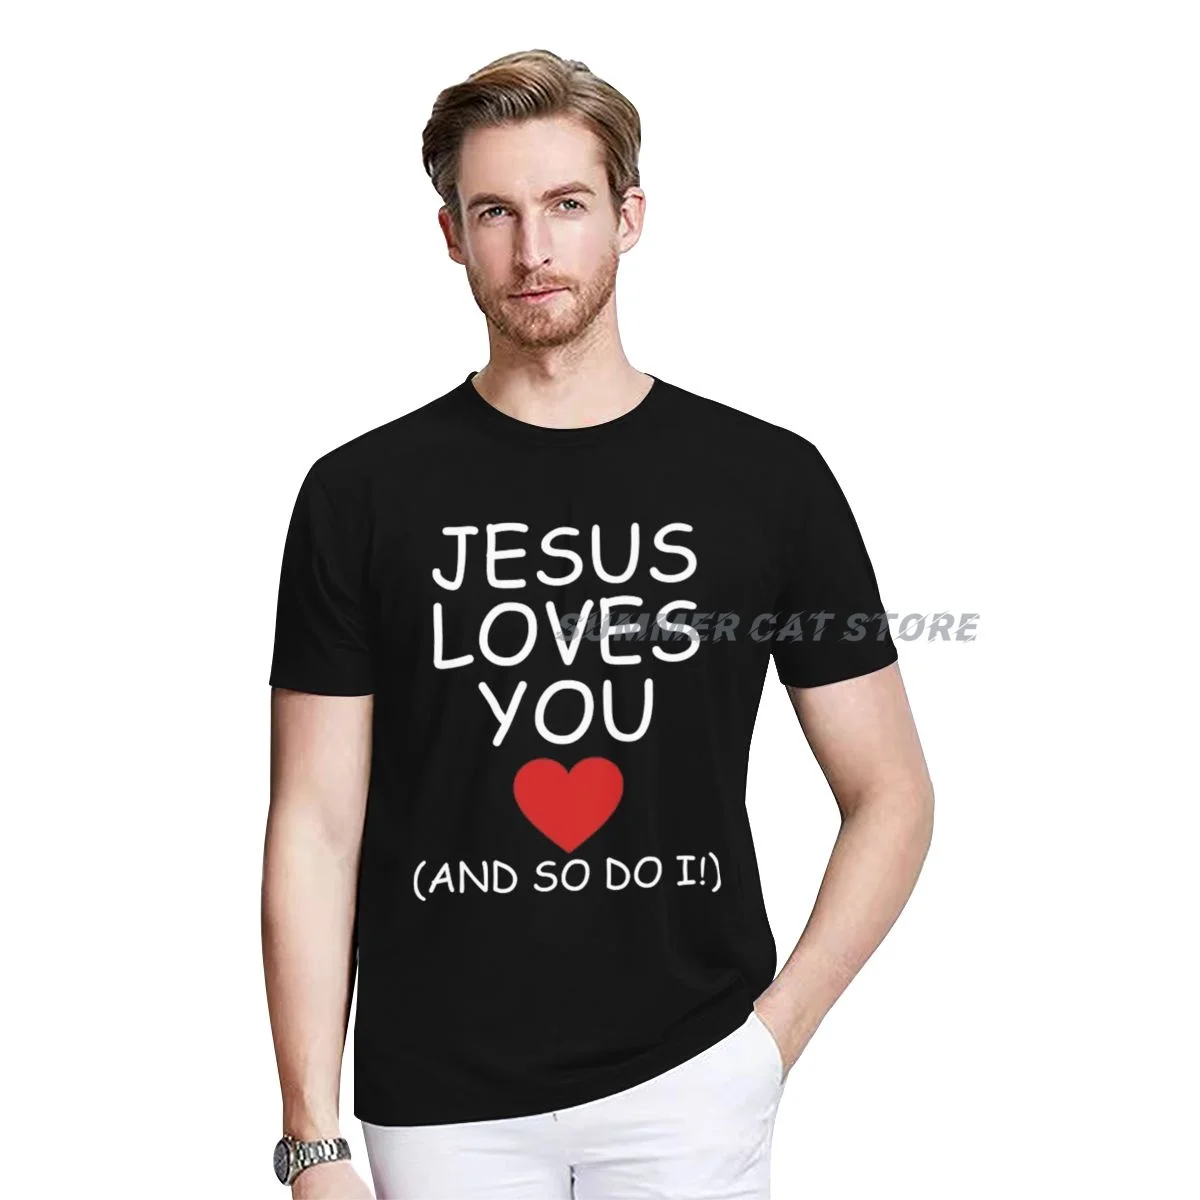 

Мужская футболка с надписью «Иисус любит тебя и так себе»